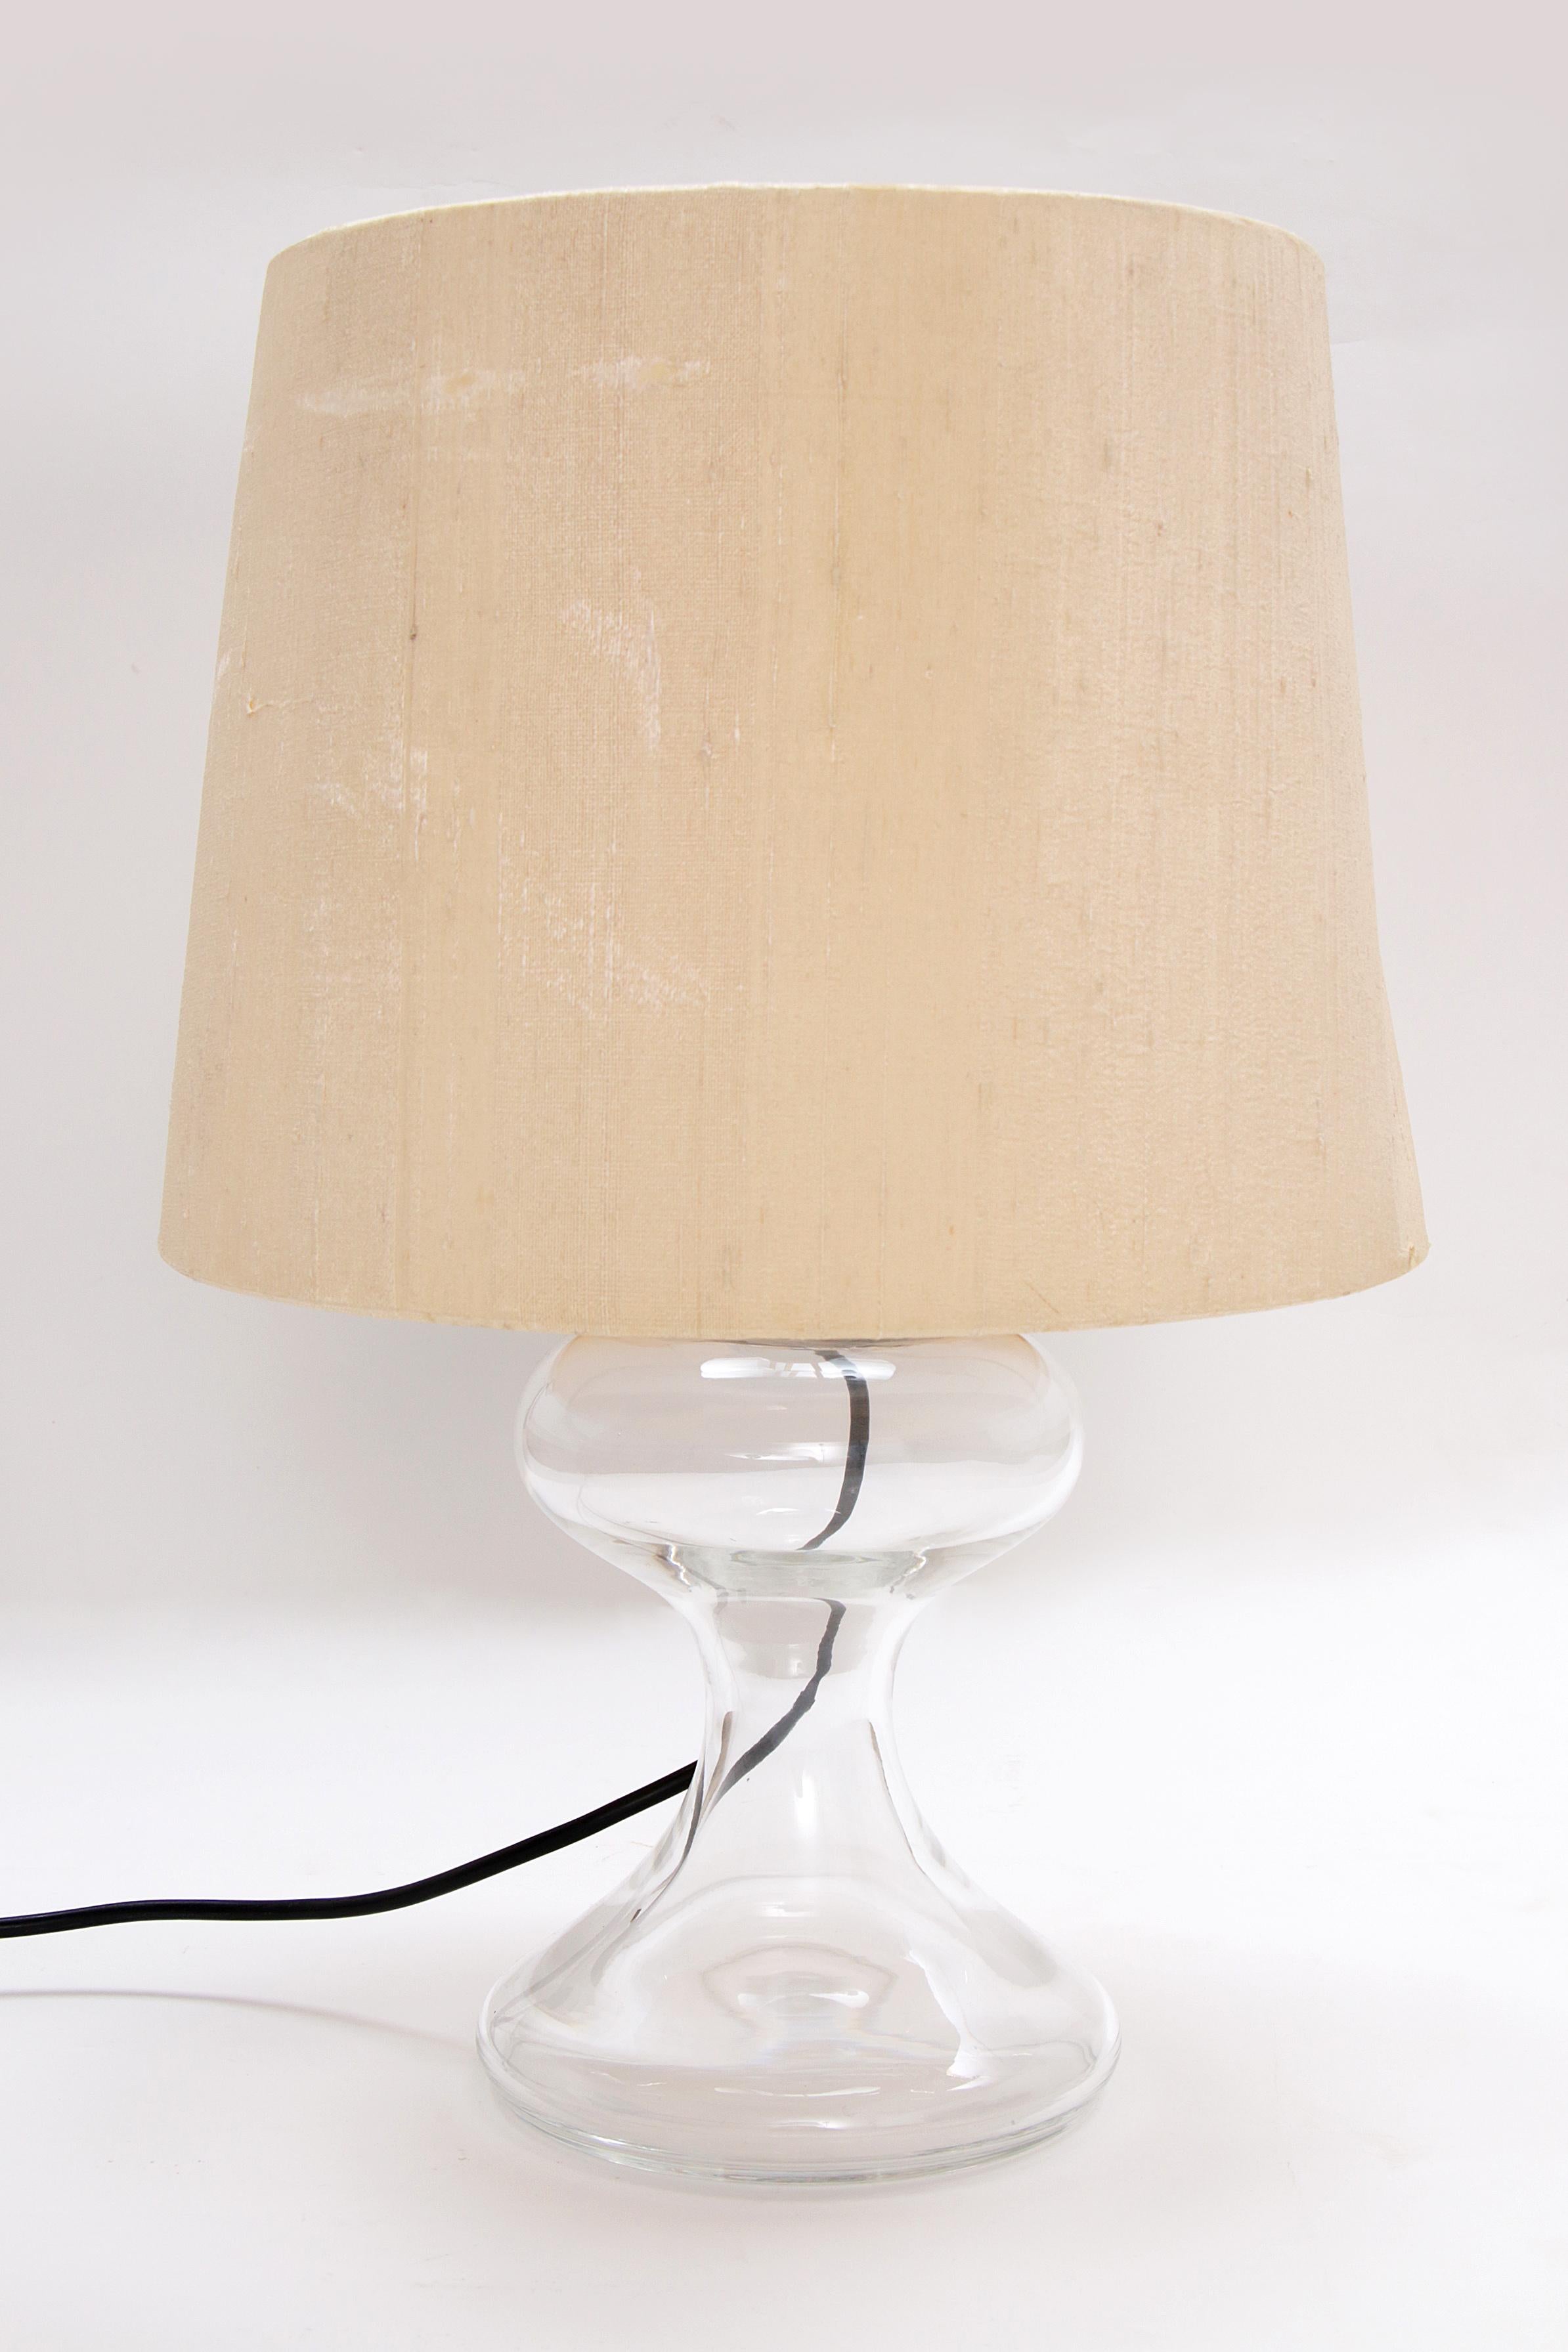 Fin du XVIIe siècle Ingo Maurer ML1 Lampe à poser - Design-Light soufflé à la bouche en vente